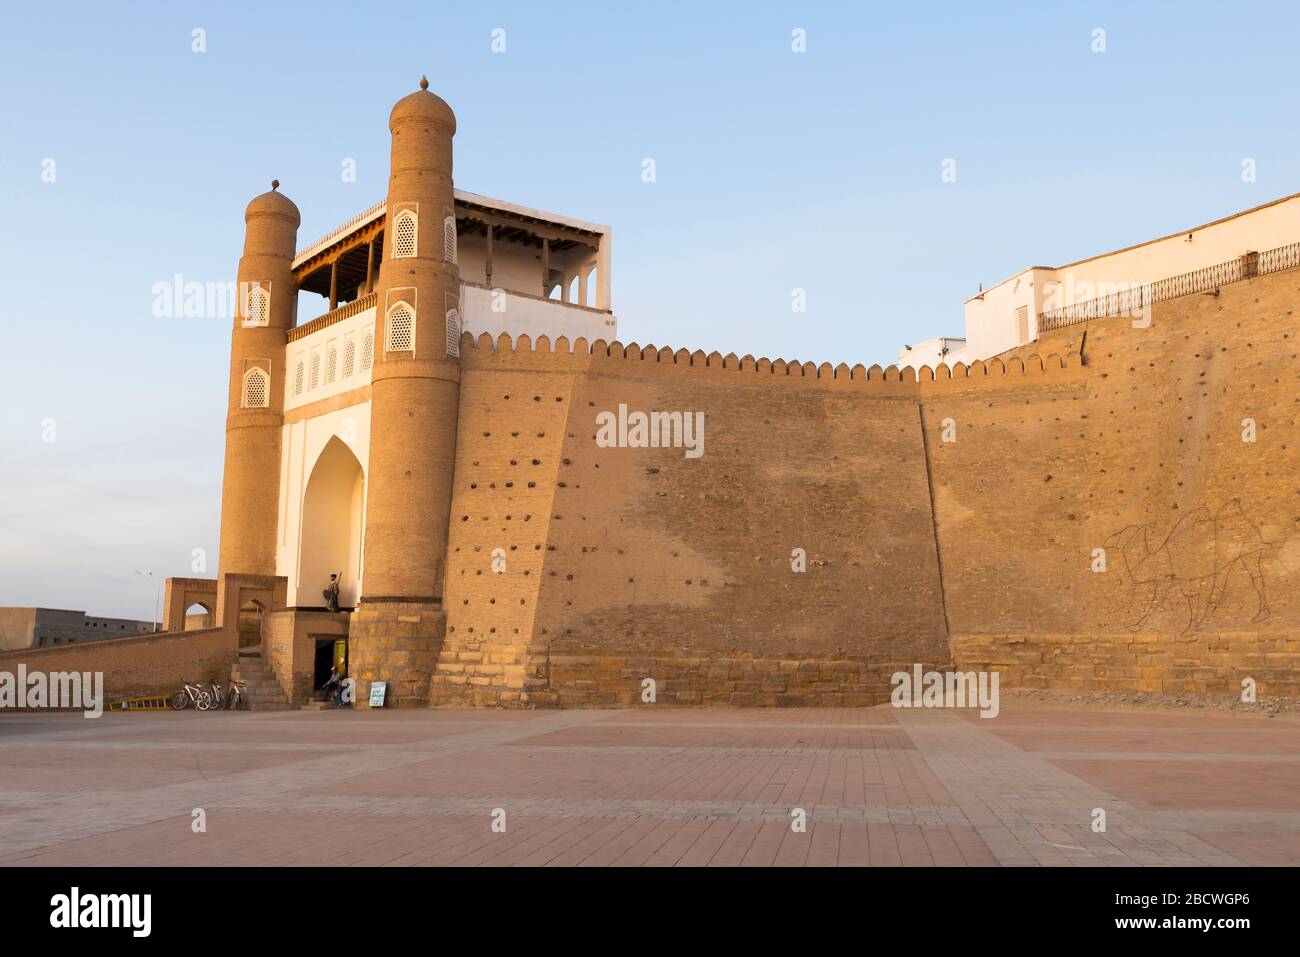 Mauer der Buchara-Festung (Arche) in Buchara, Usbekistan. Die massive Festung wird Arche von Buchara genannt. Befestigte Ziegelmauer. Stockfoto